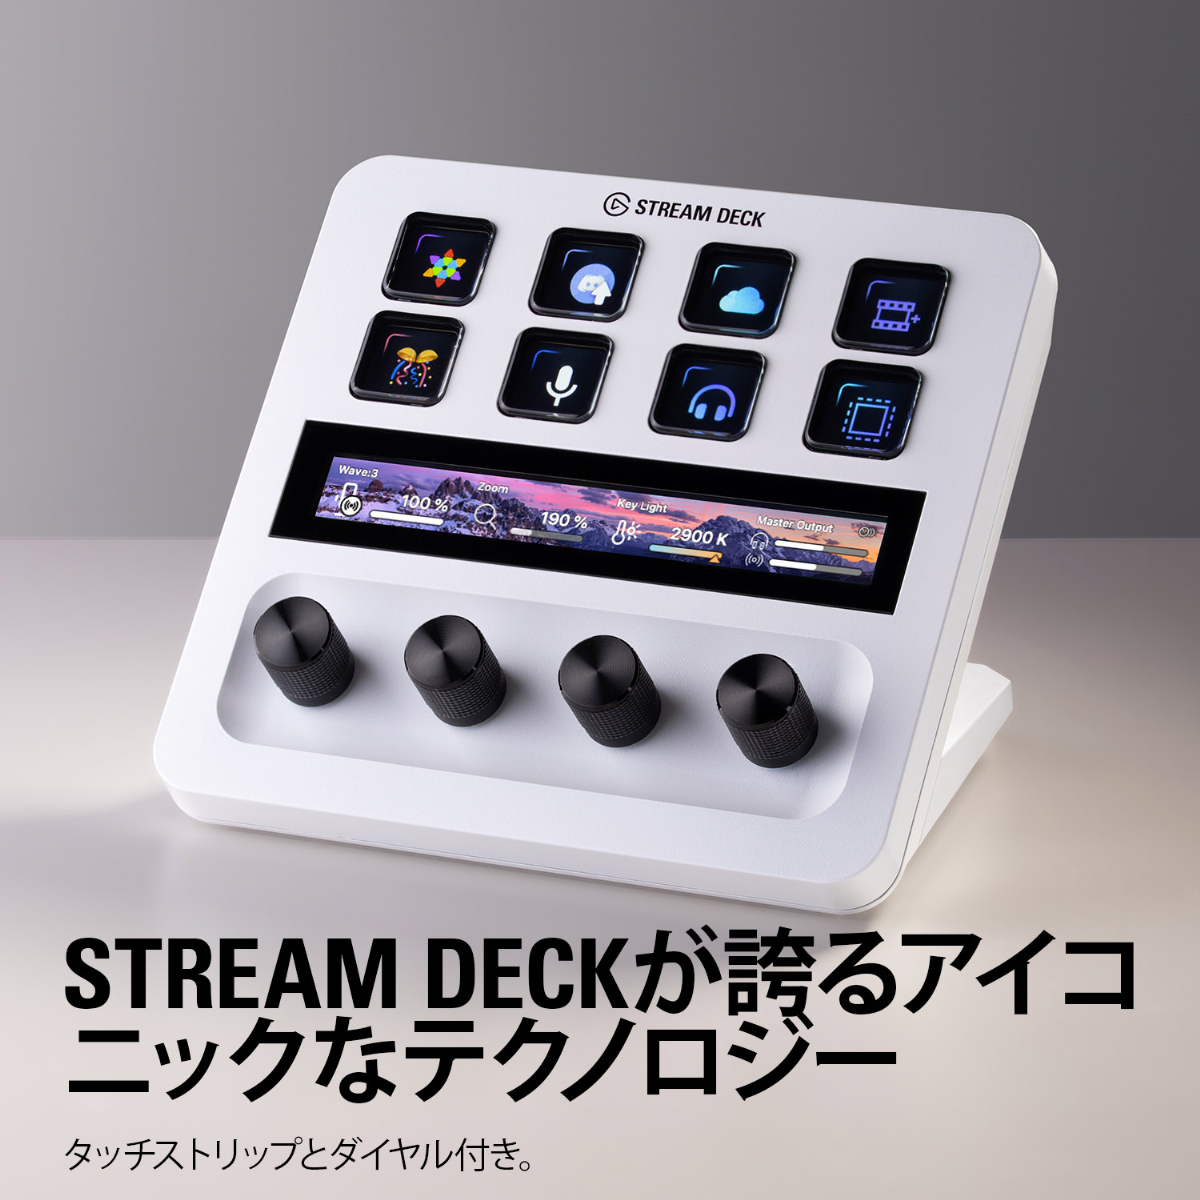 日本正規販売代理店】Stream Deck + Elgato ホワイト タッチパネル付き ...